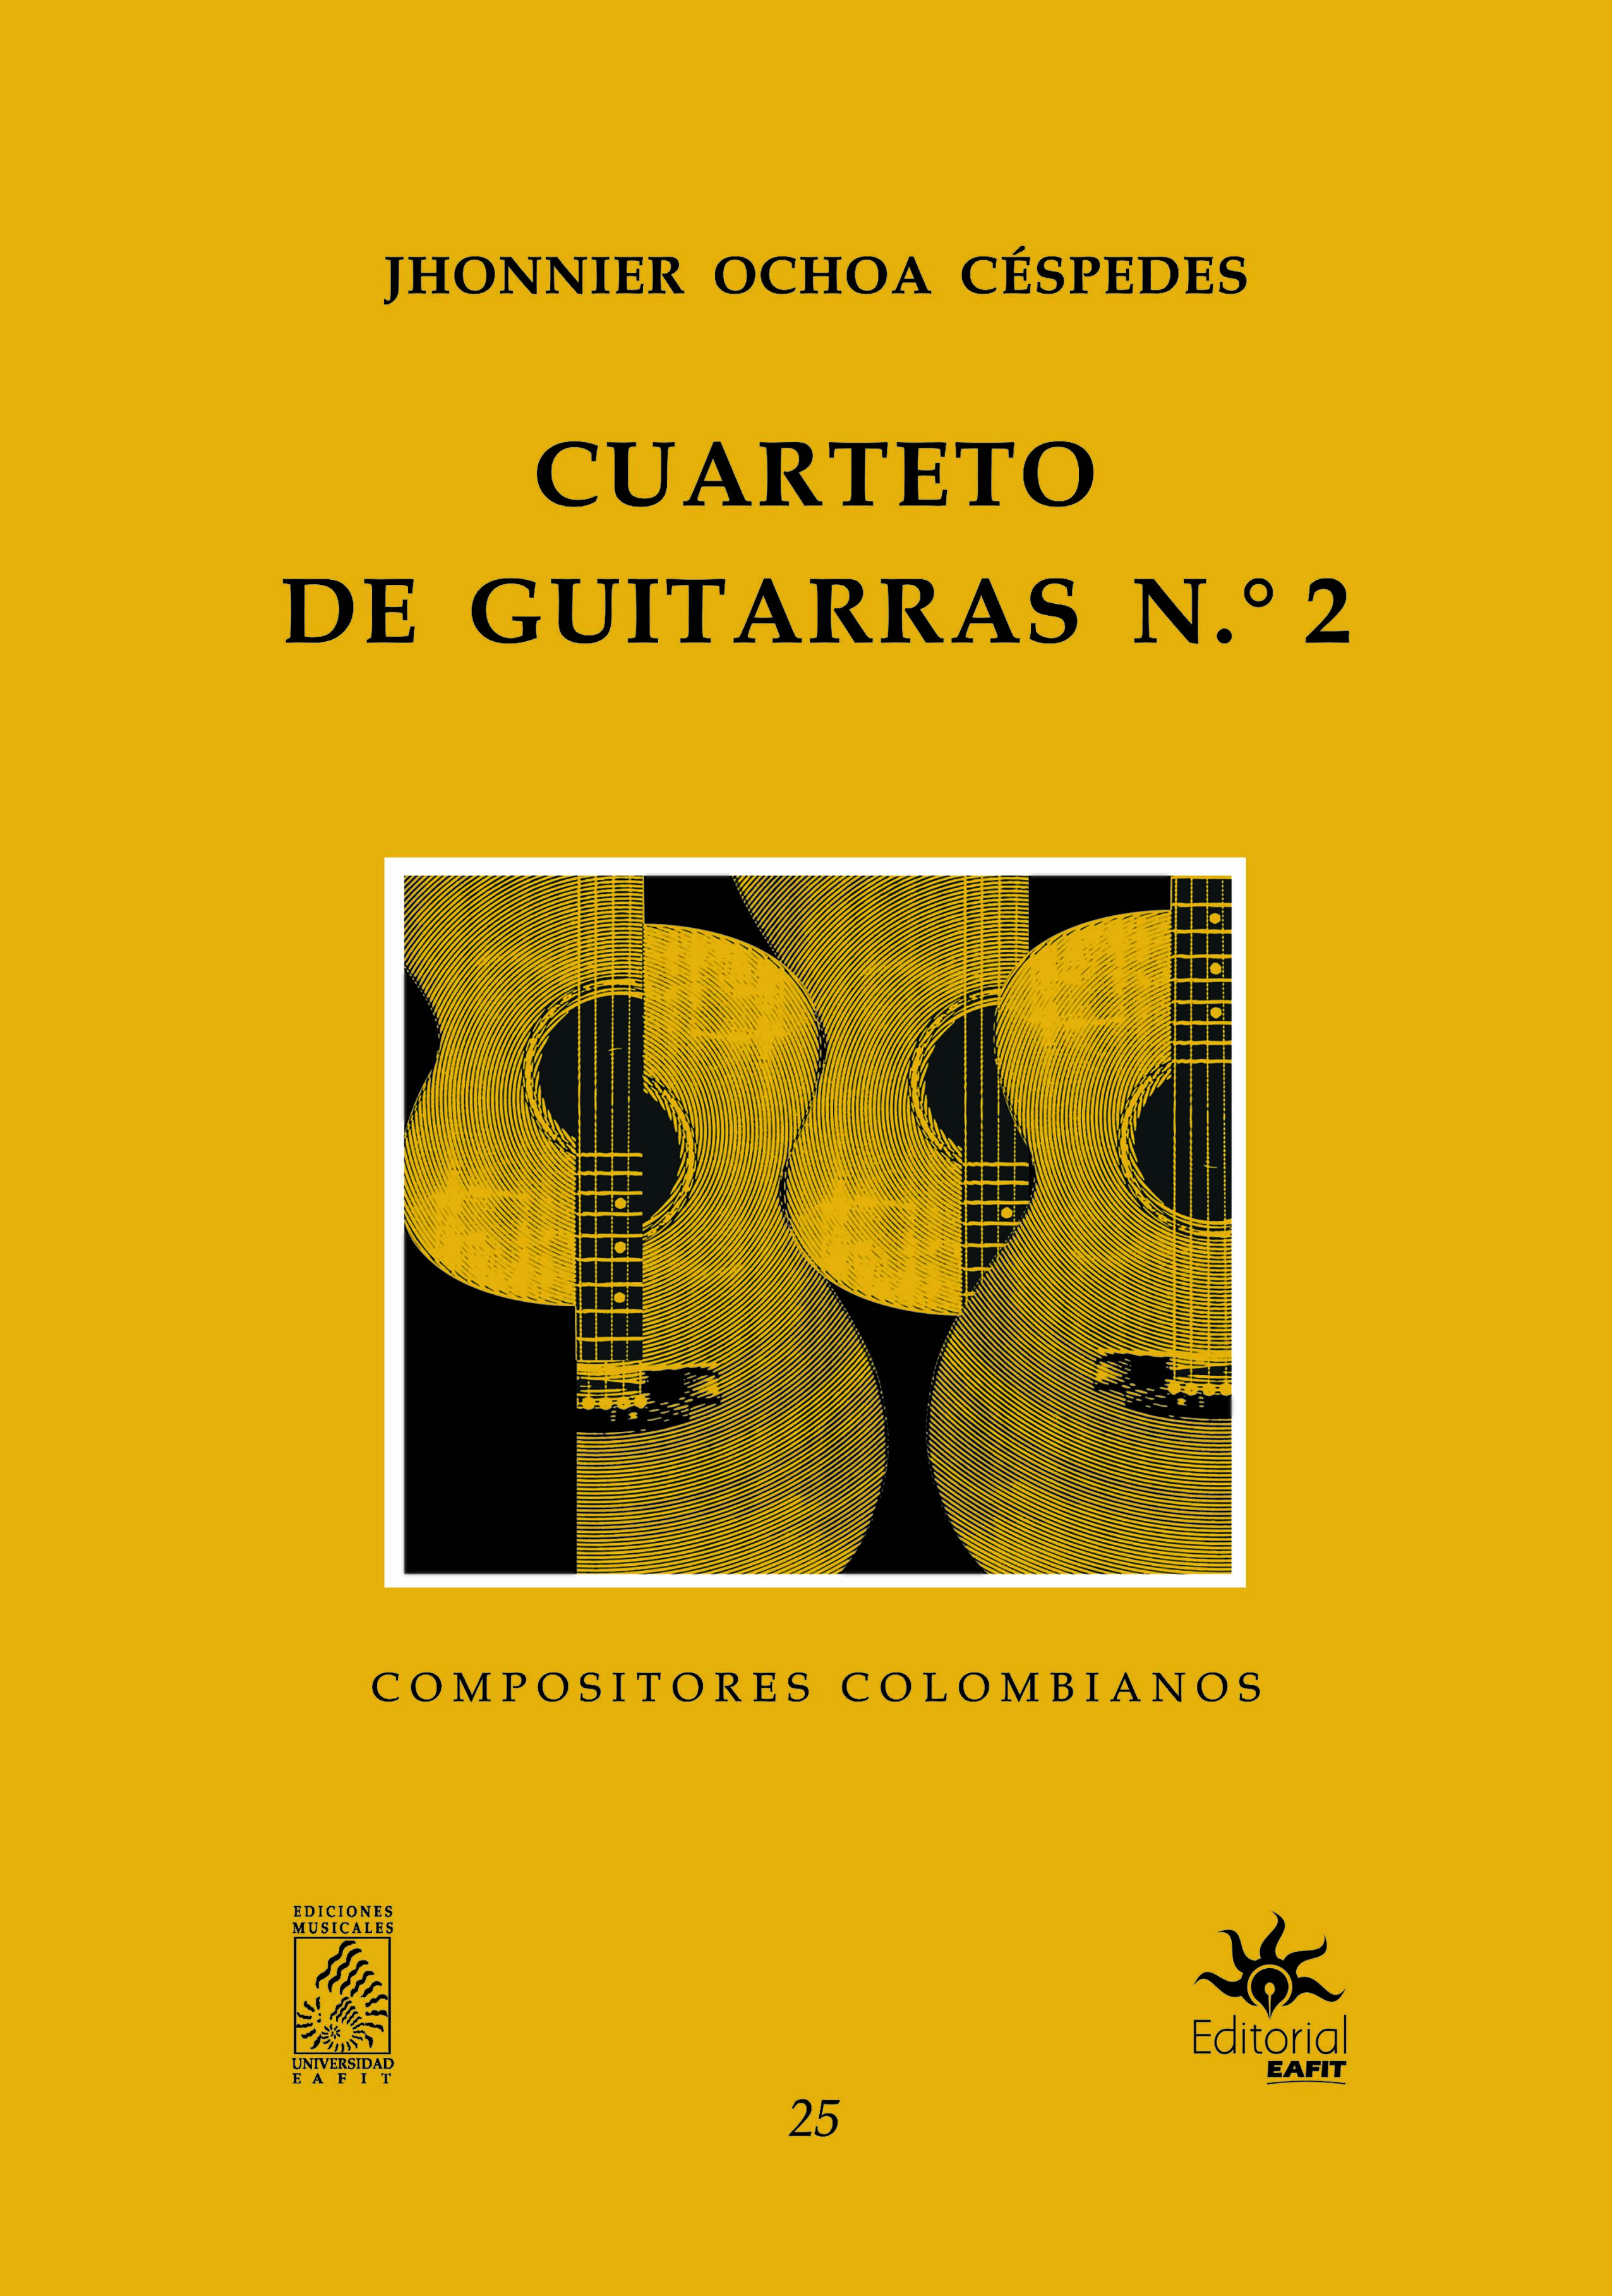 Cuarteto de guitarras No-2.jpg